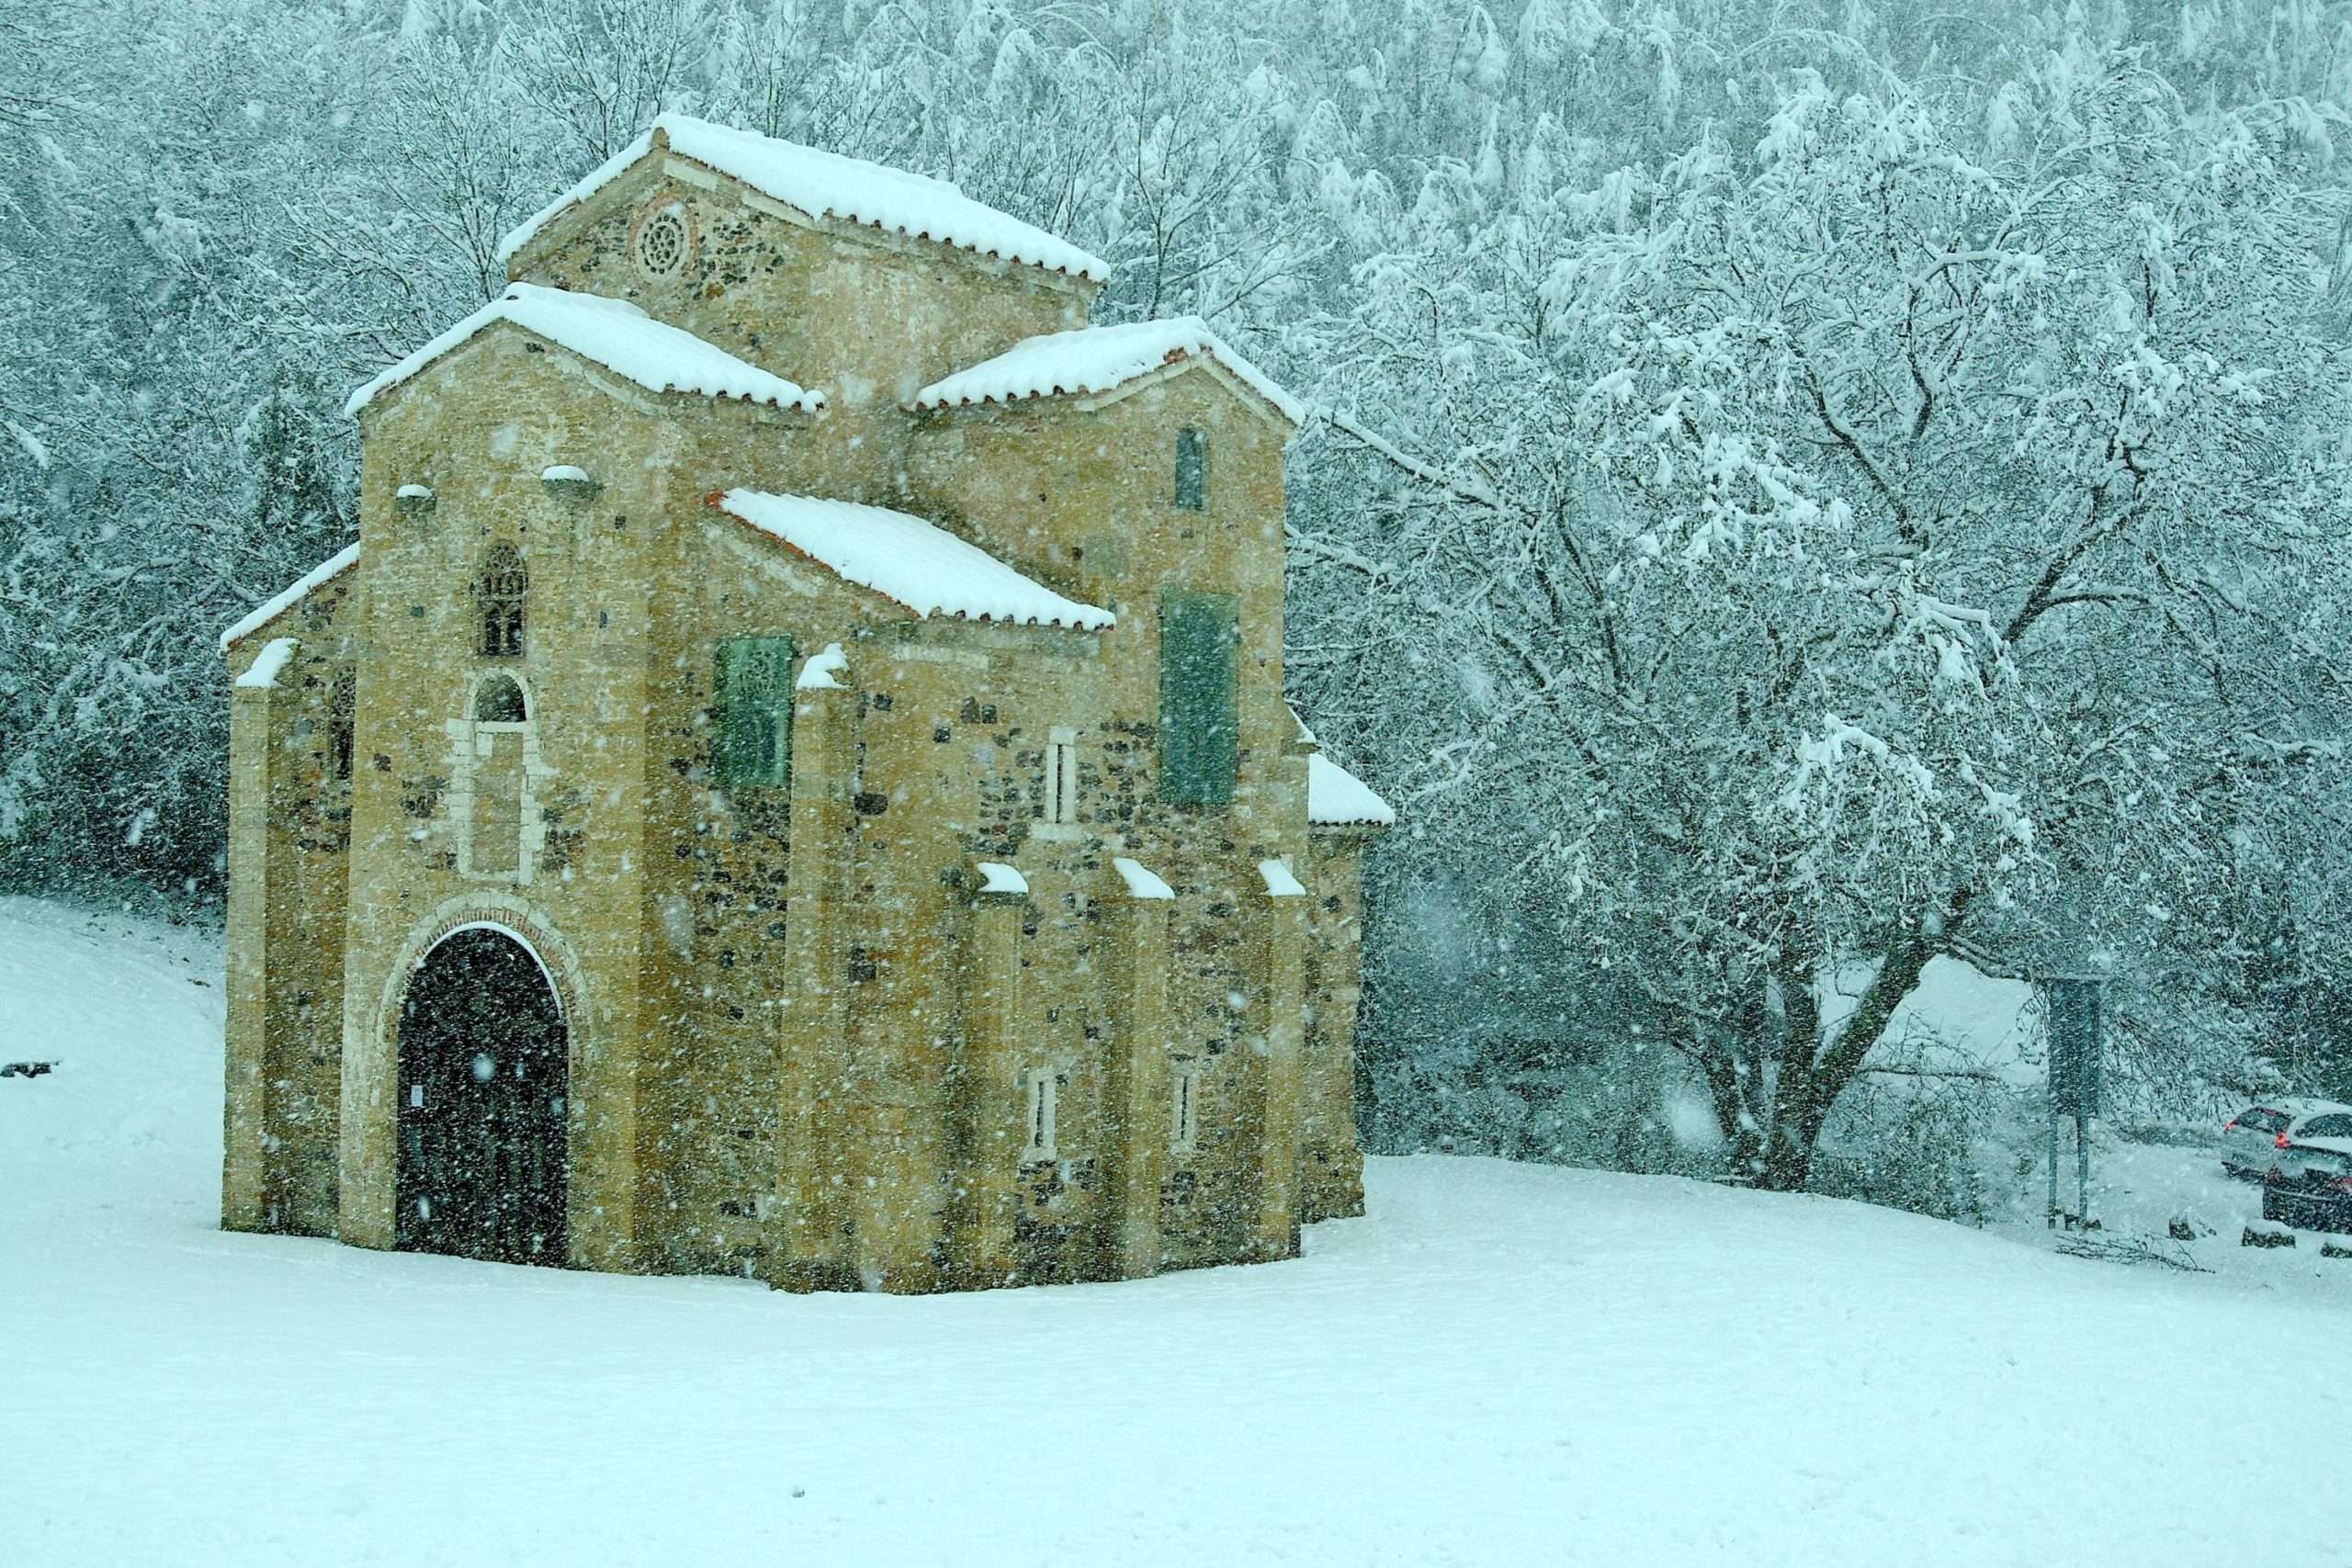 Diez planes para disfrutar en familia de la nieve en Asturias (y sin tener  que ir al fin del mundo) - La Nueva España